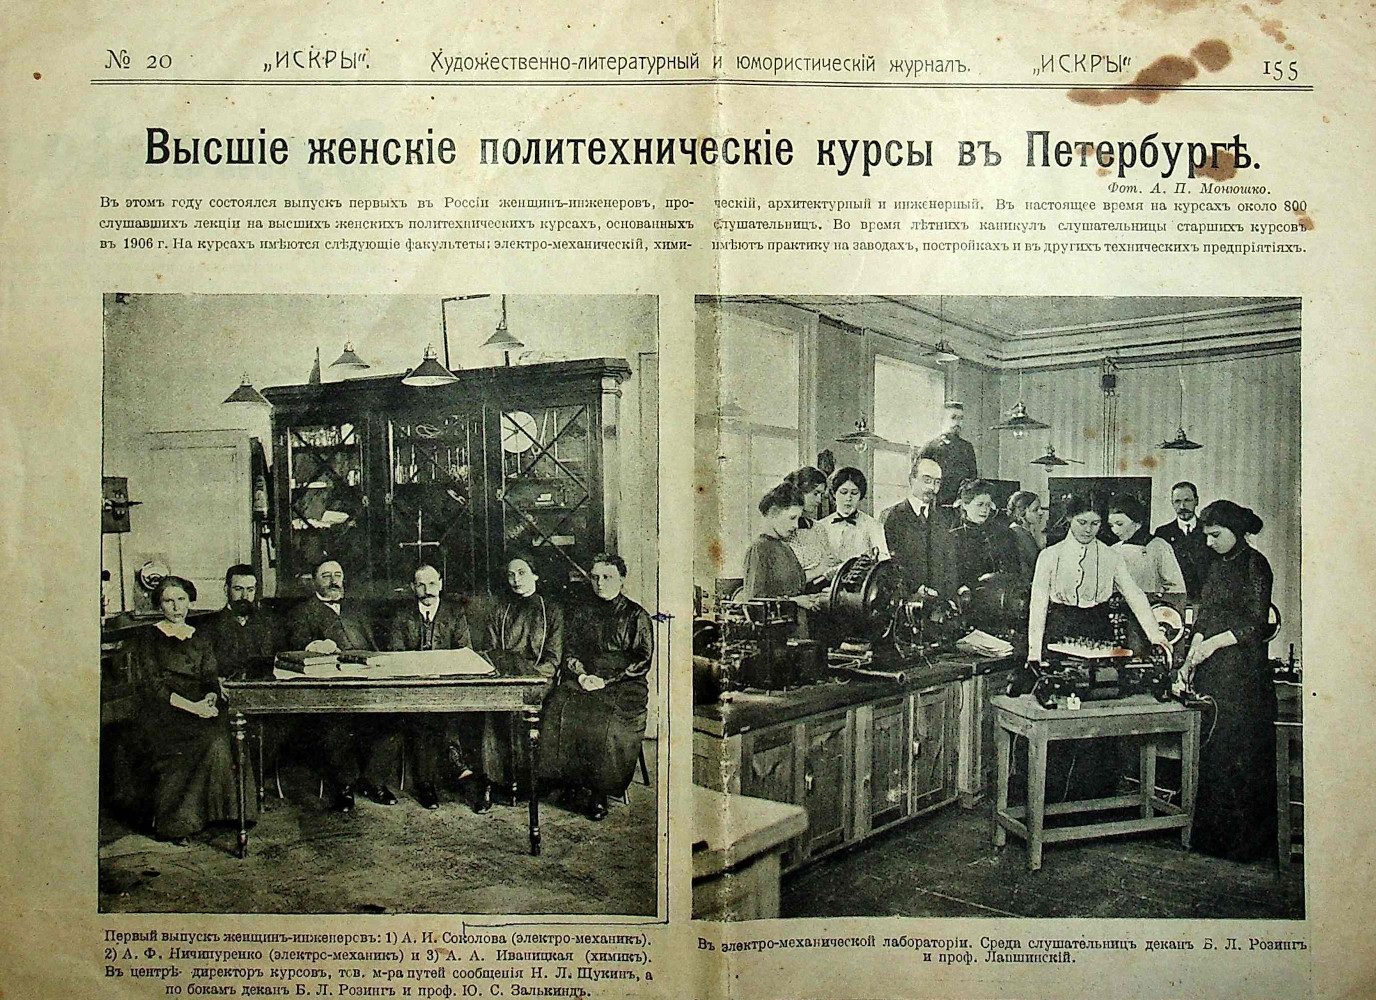 Страница журнала «Искры» № 20 за 1912 г.